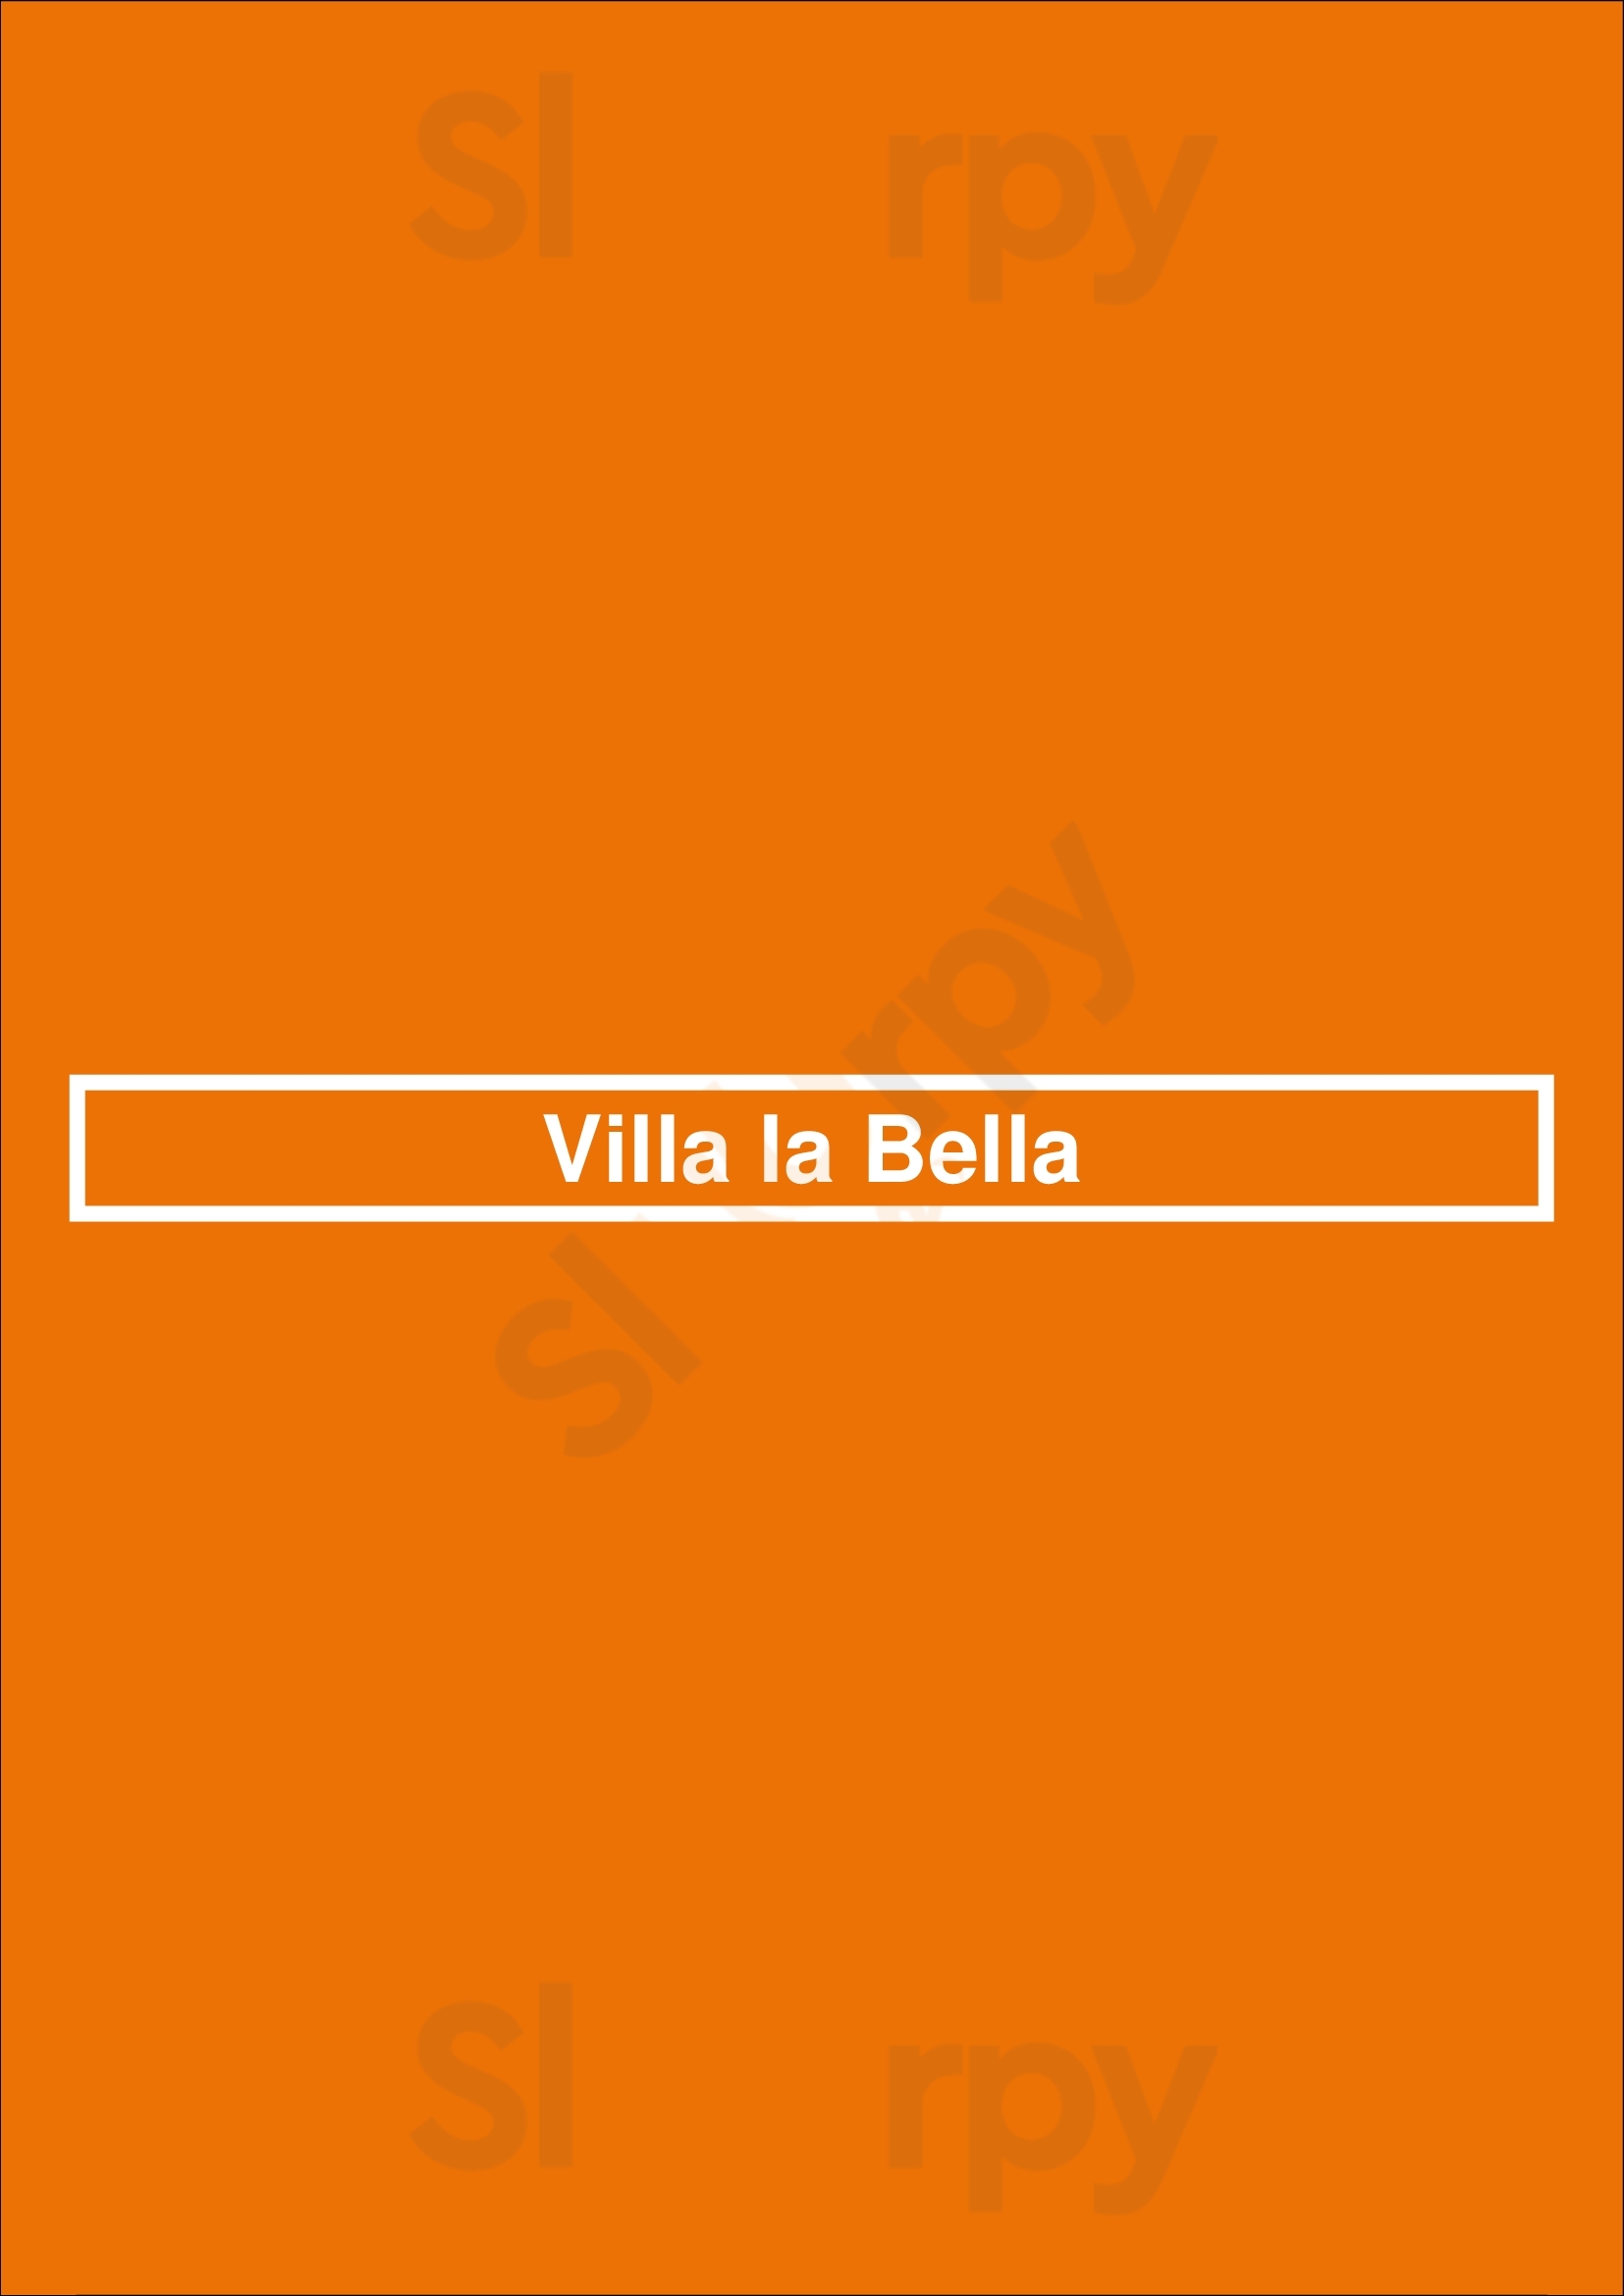 Villa La Bella Veldhoven Menu - 1